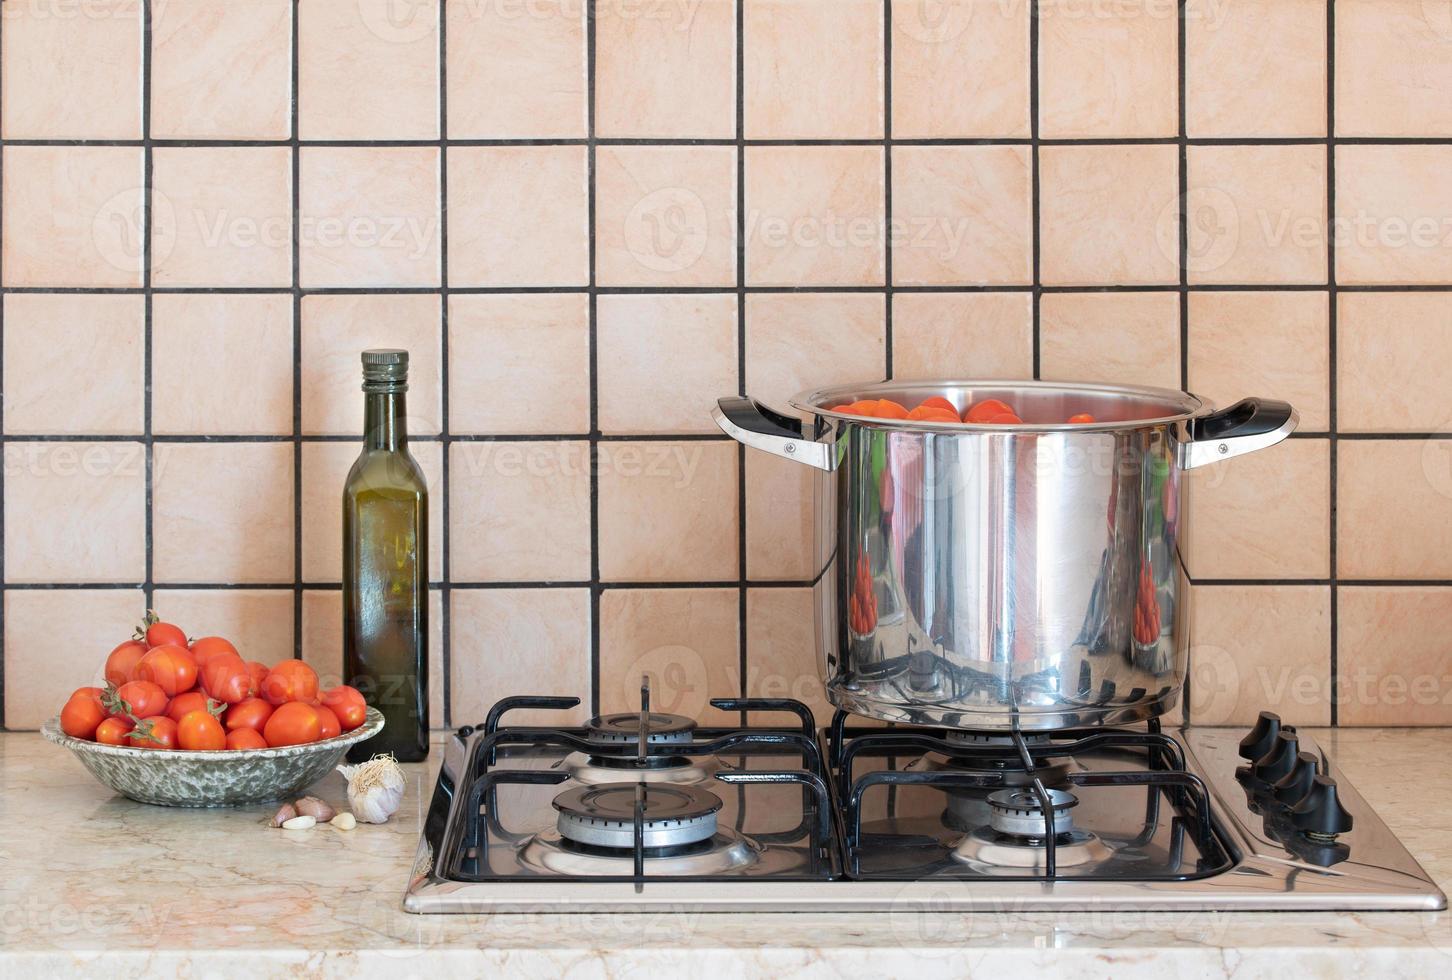 uma panela de aço inoxidável com tomates fica em um antigo fogão a gás. ao lado da panela há uma tigela de tomates, uma garrafa de azeite e um pouco de alho. o fundo é lado a lado. foto